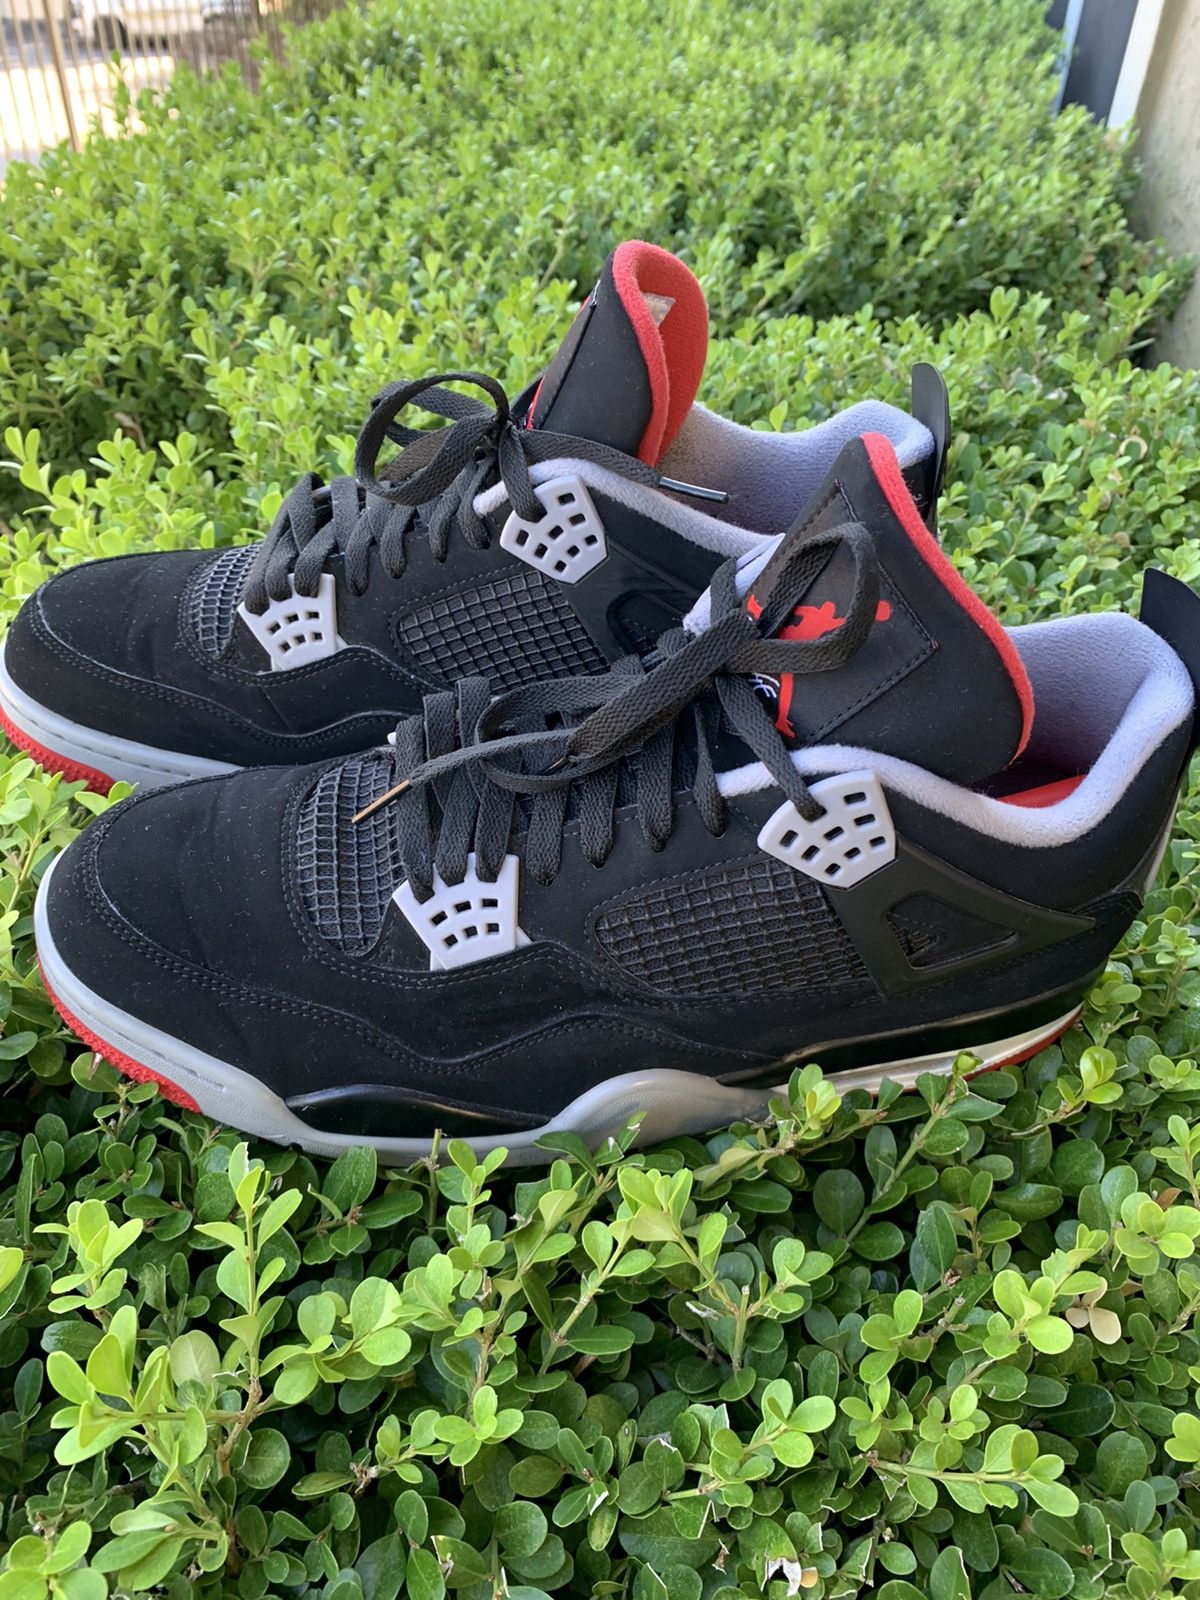 Nike Air Jordan 4 Retro OG 2019 Bred 2019 Size US 13 / EU 46 - 4 Thumbnail